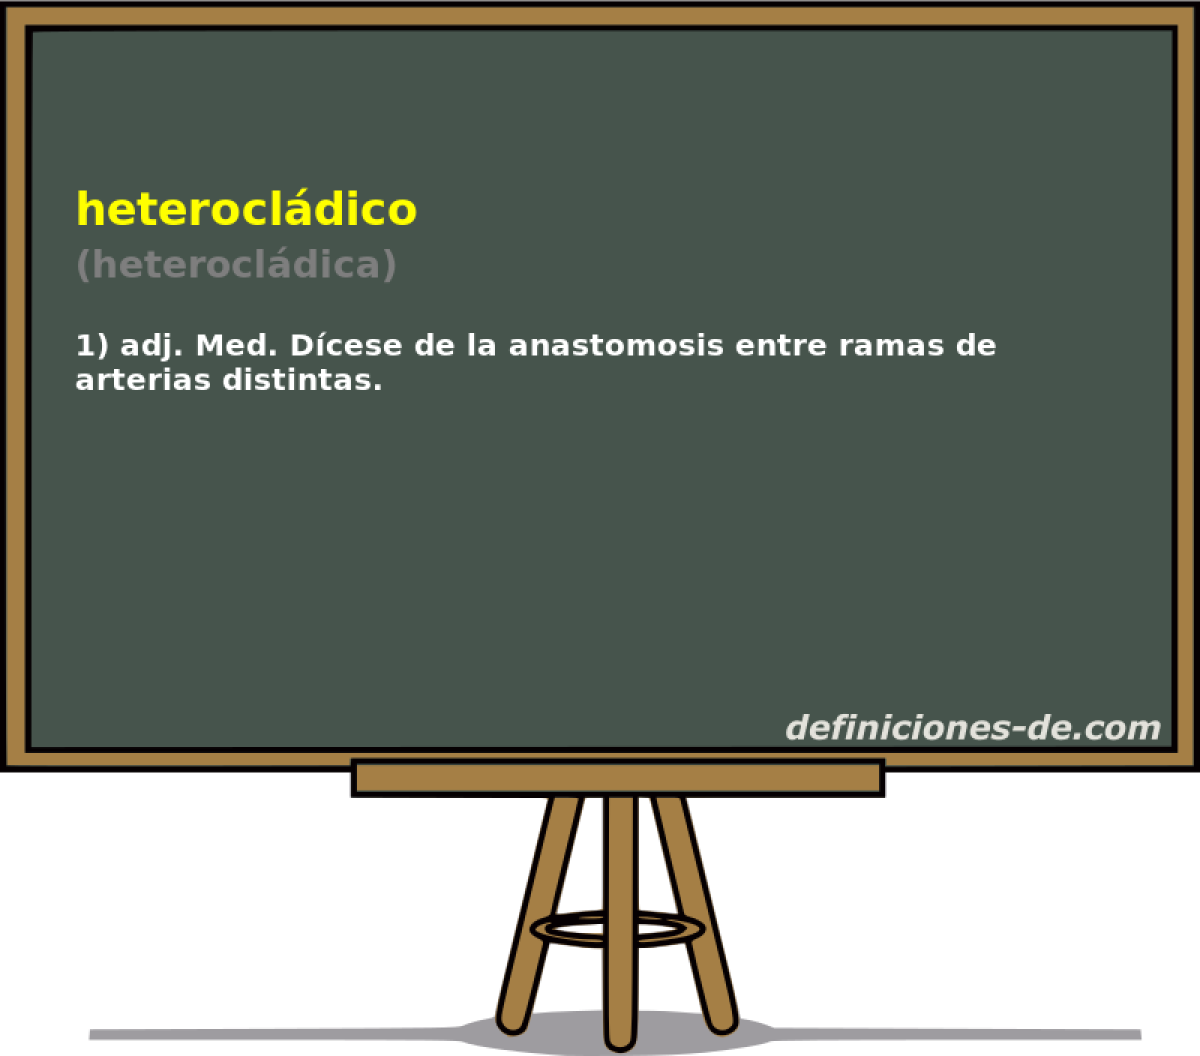 heterocldico (heterocldica)